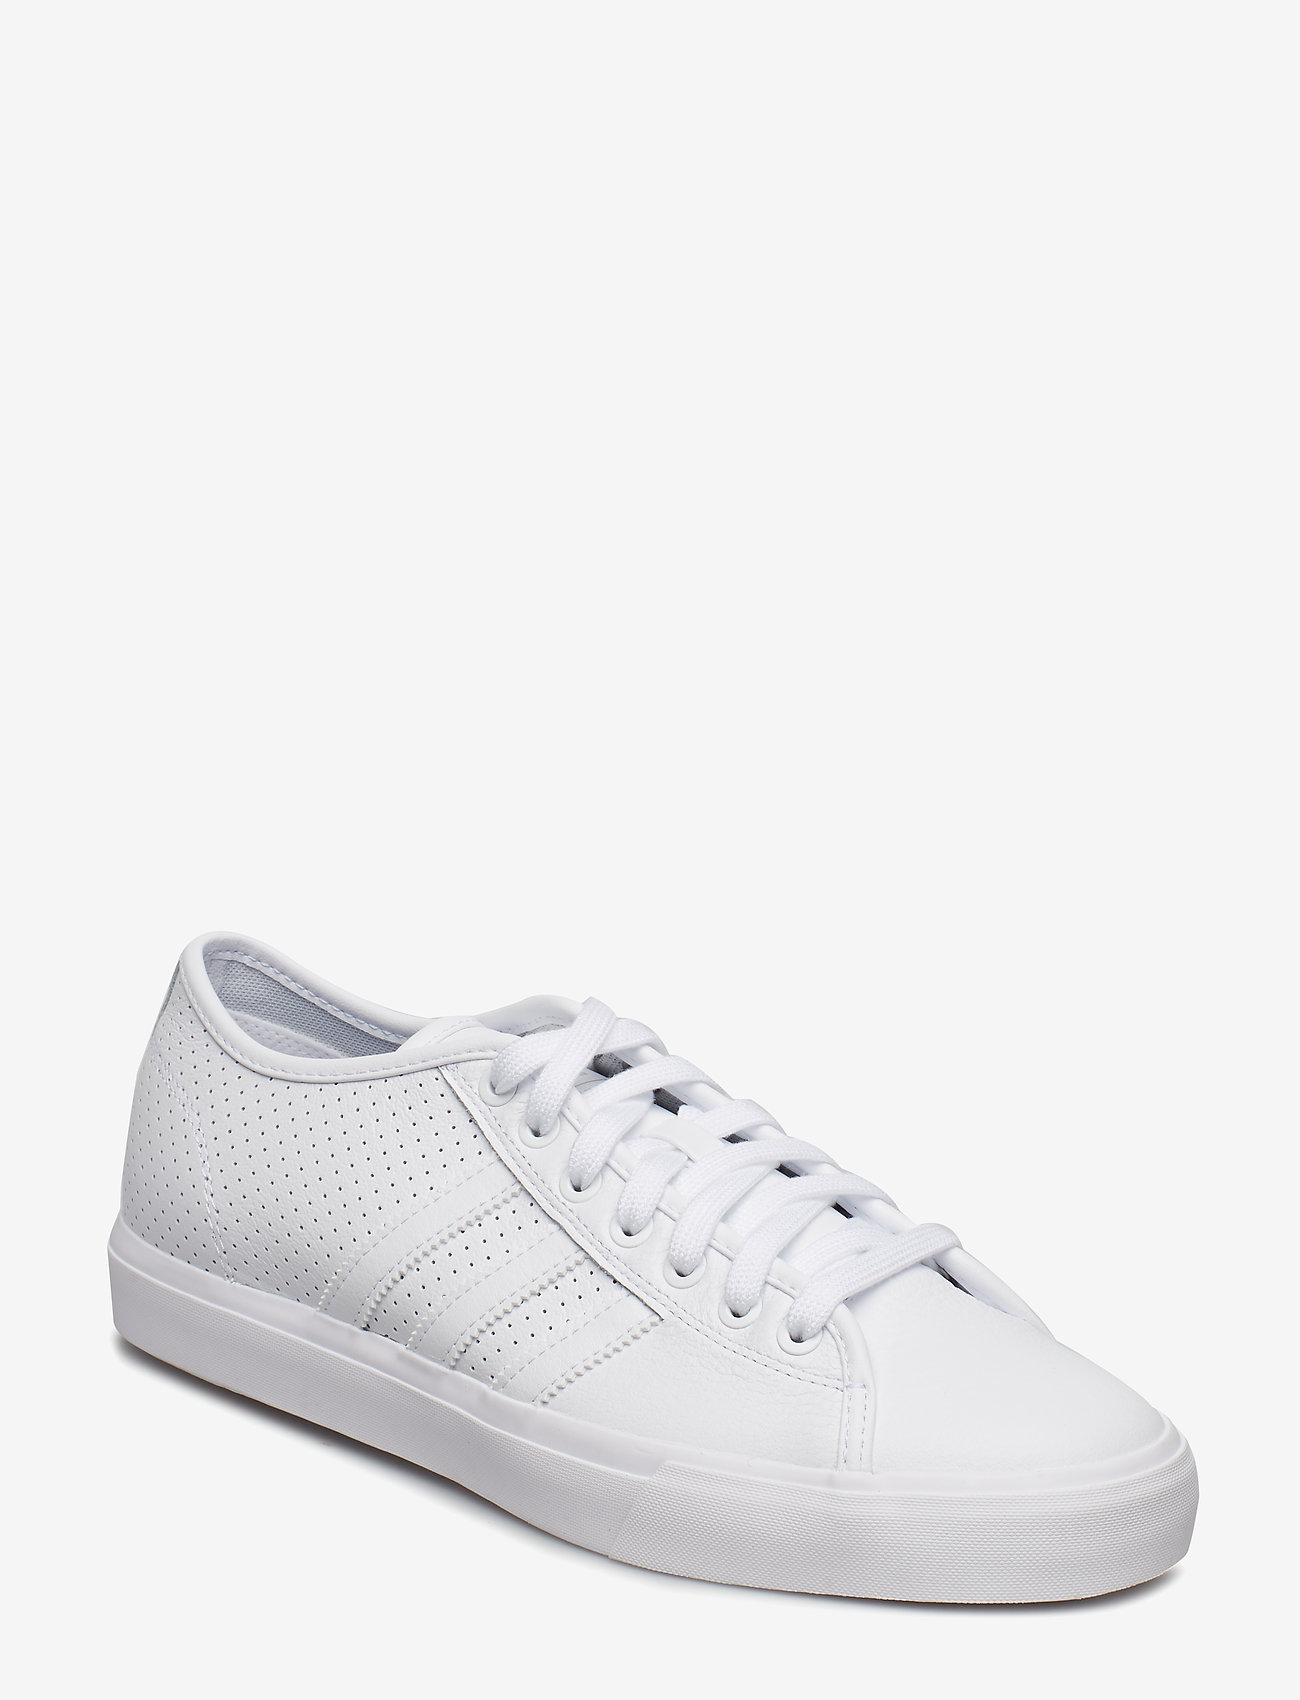 adidas matchcourt rx white